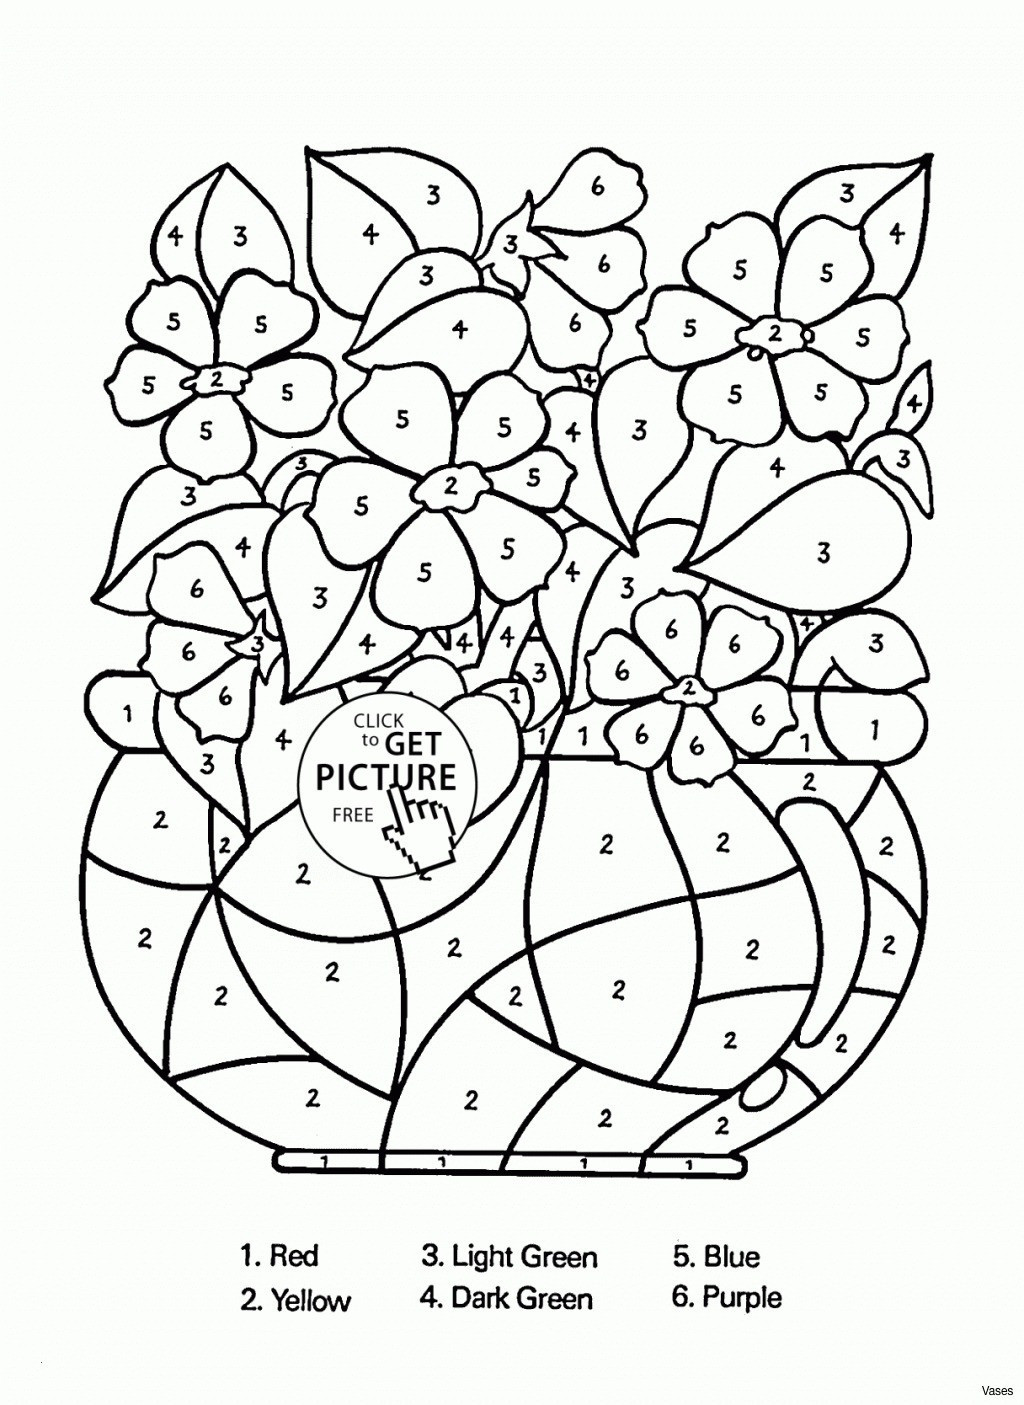 29 Unique Acrylic Cylinder Vase 2023 free download acrylic cylinder vase of 20 beautiful square black vases bogekompresorturkiye com regarding coloring flowers fresh coloring worksheets for kindergarten free lovely cool vases flower